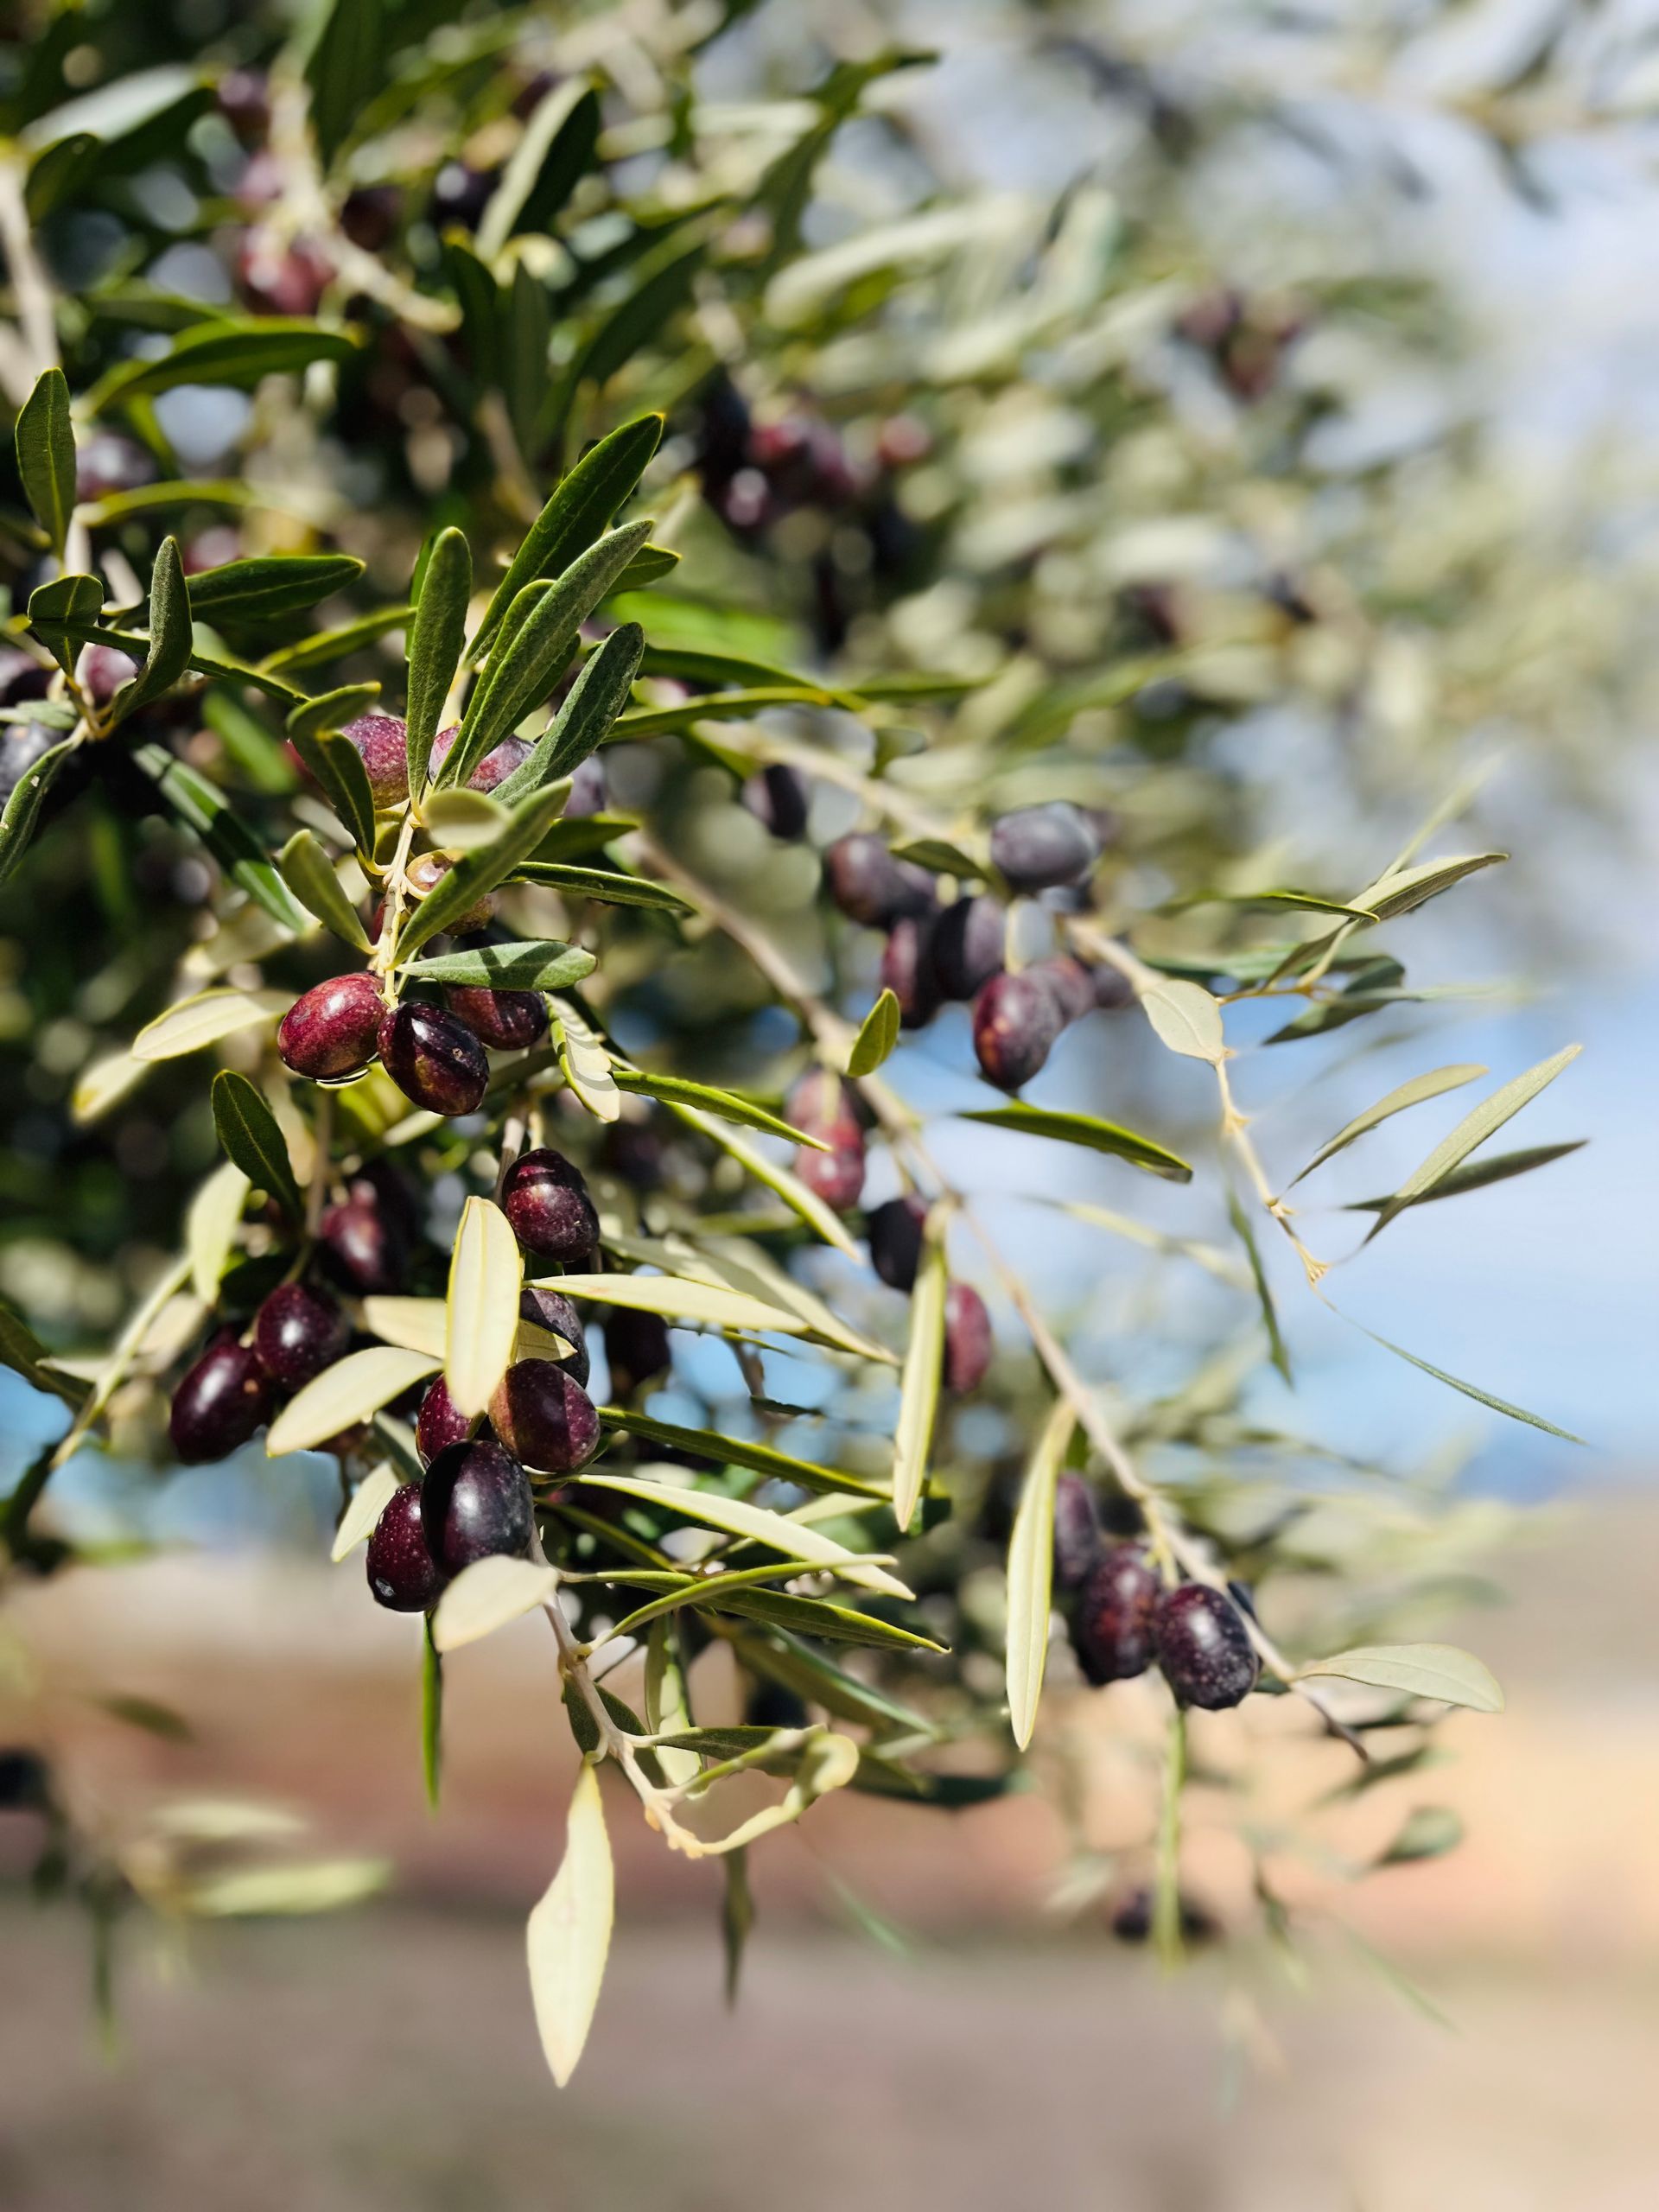 Oliven am Olivenbaum, eine gesunde Fettquelle